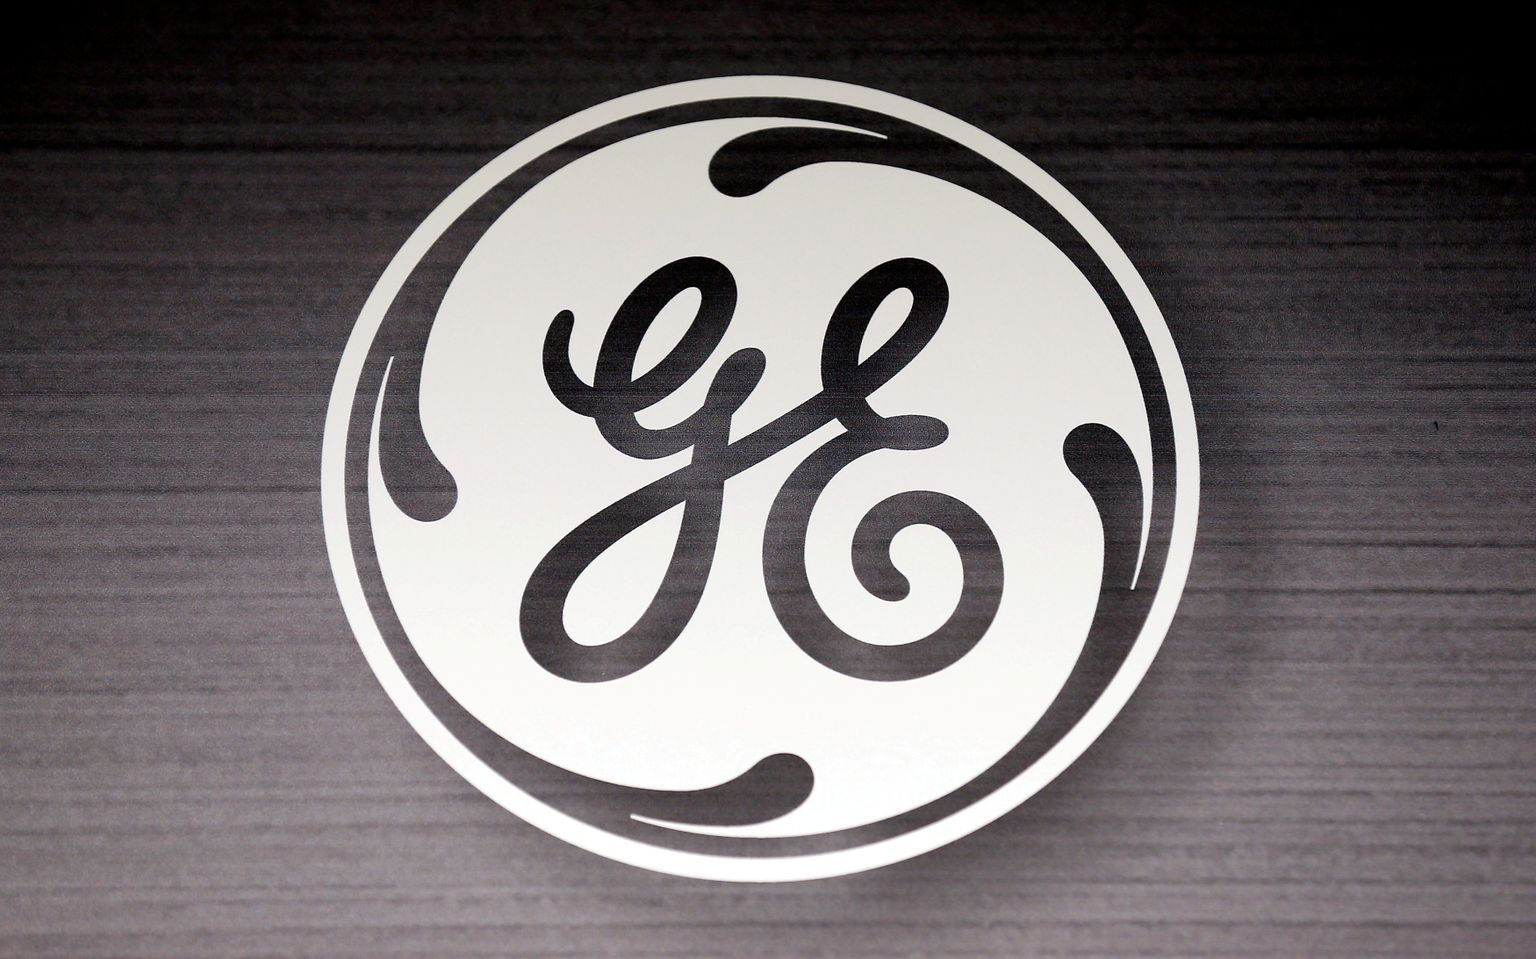 General Electricu logo.